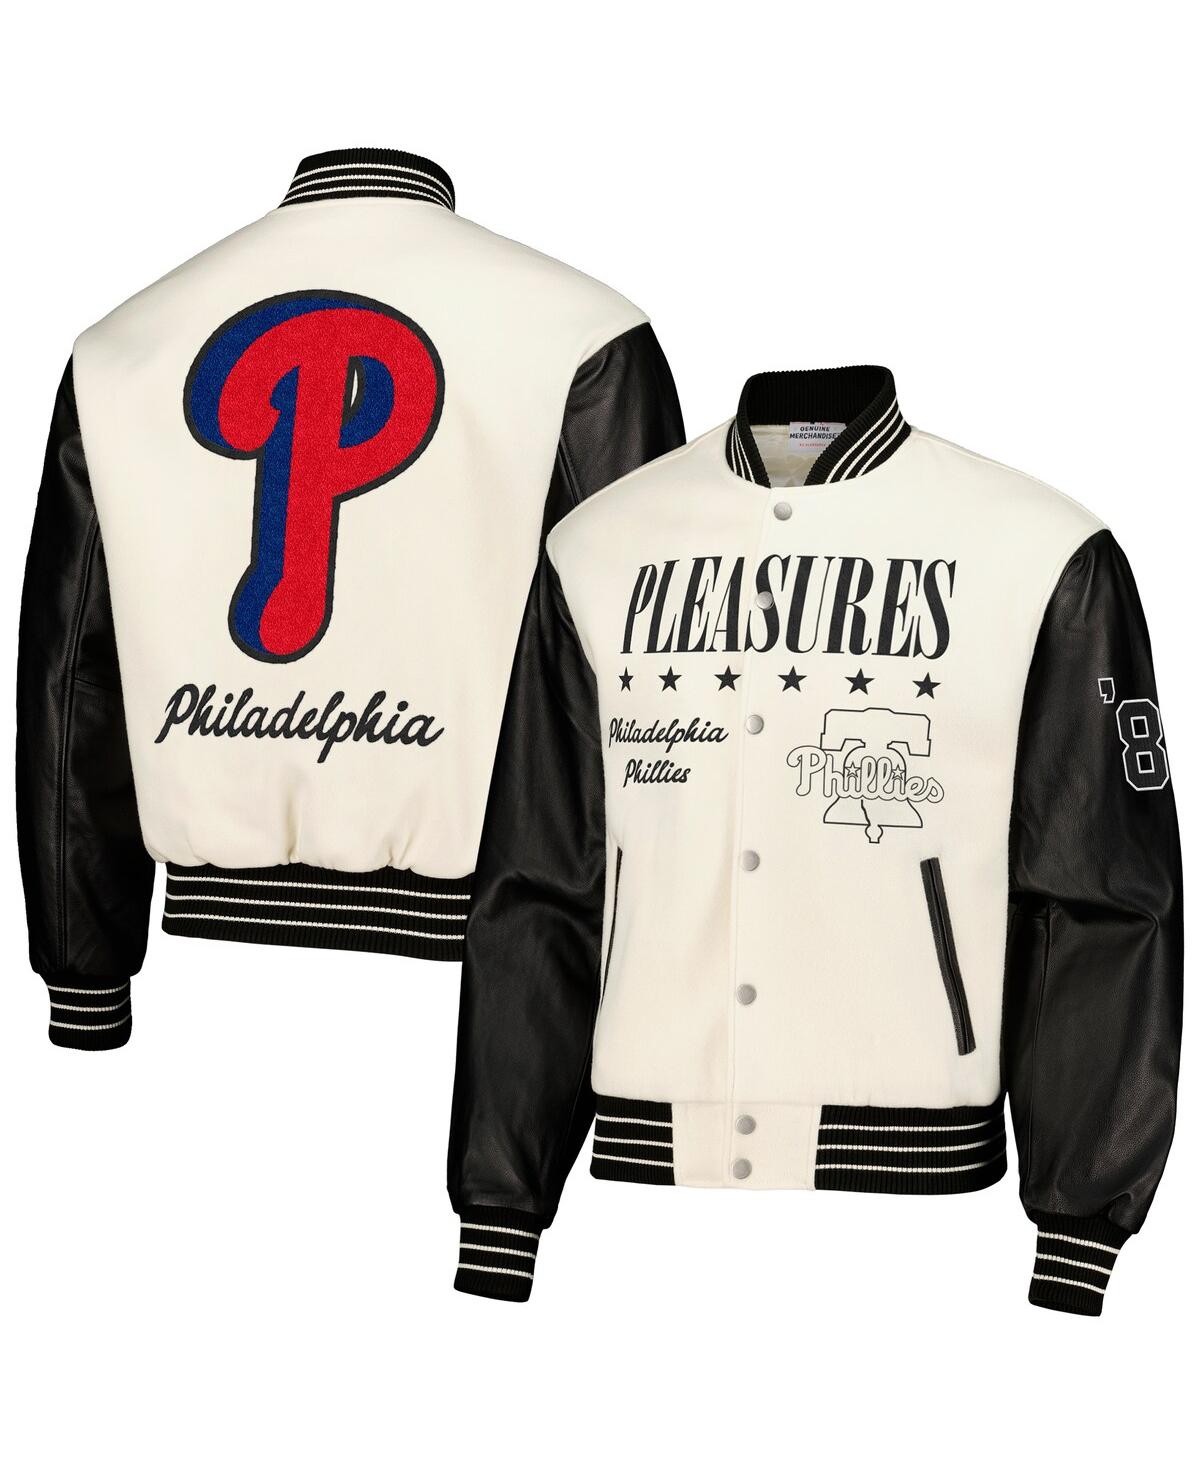 Men's Pleasures White Philadelphia Phillies Full-Snap Varsity Jacket - White